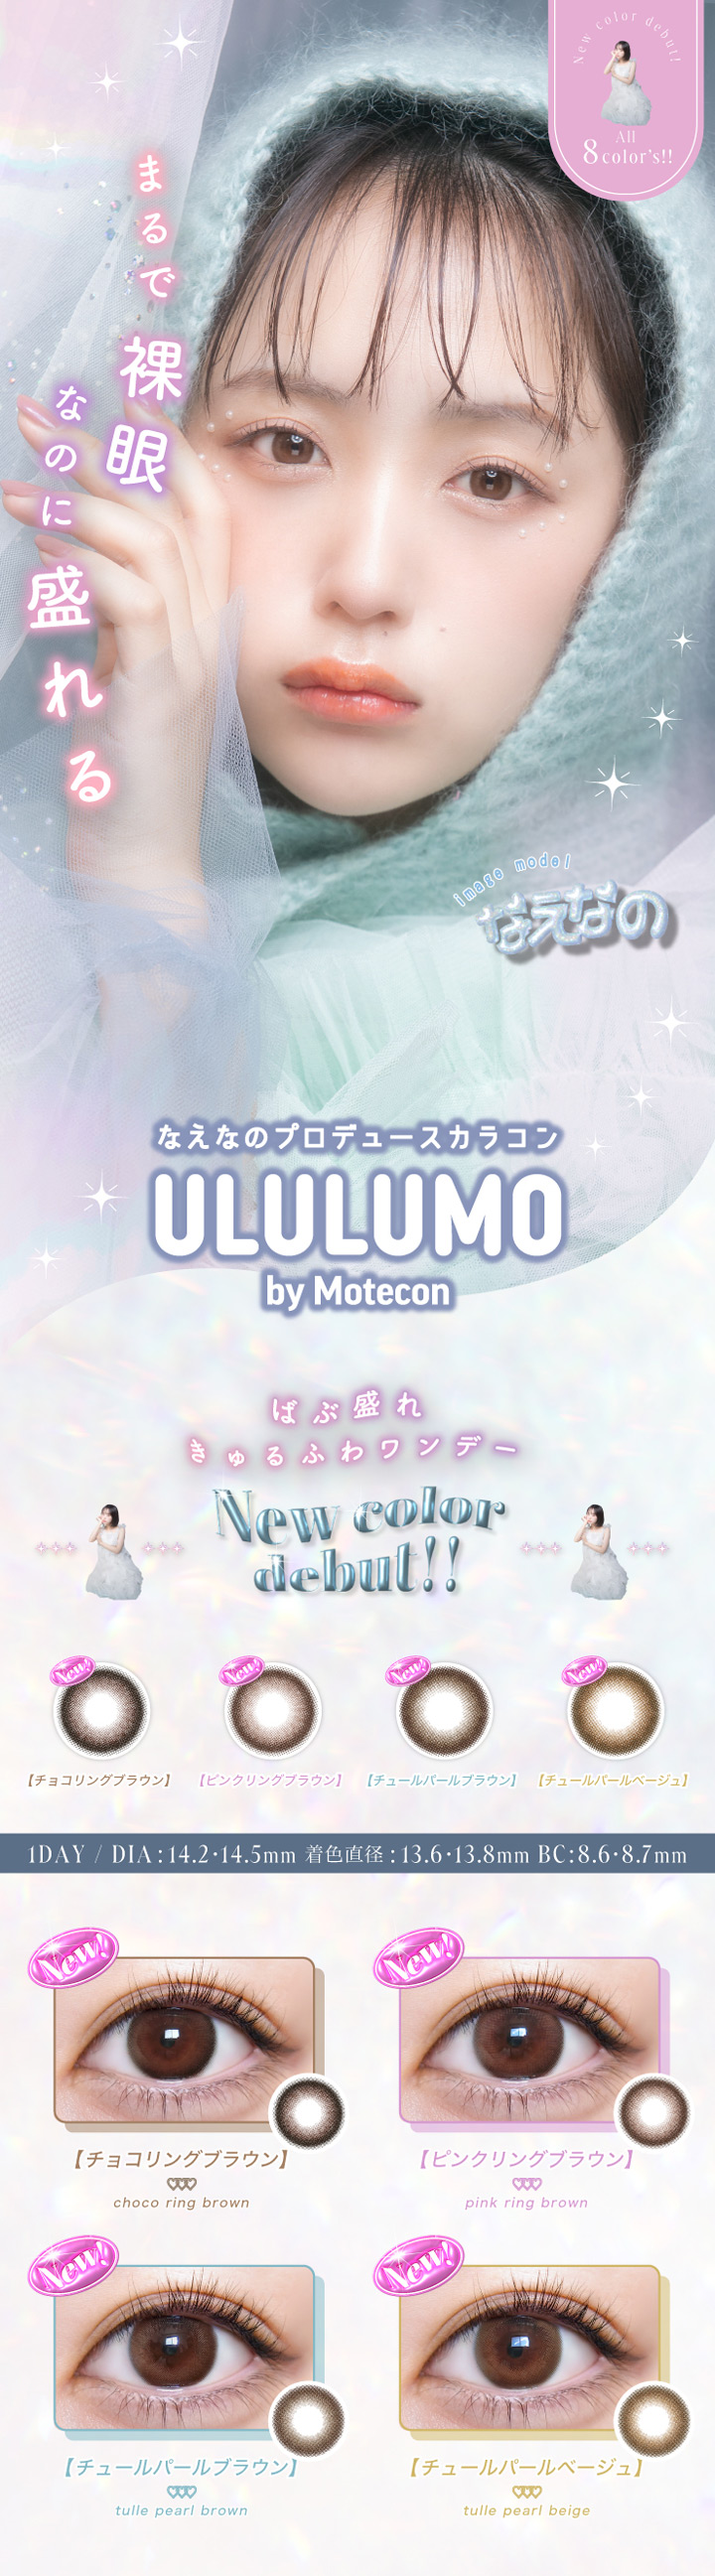 なえなのプロデュース ワンデー カラコン　ウルルモ by モテコン ULULUMO by motecon